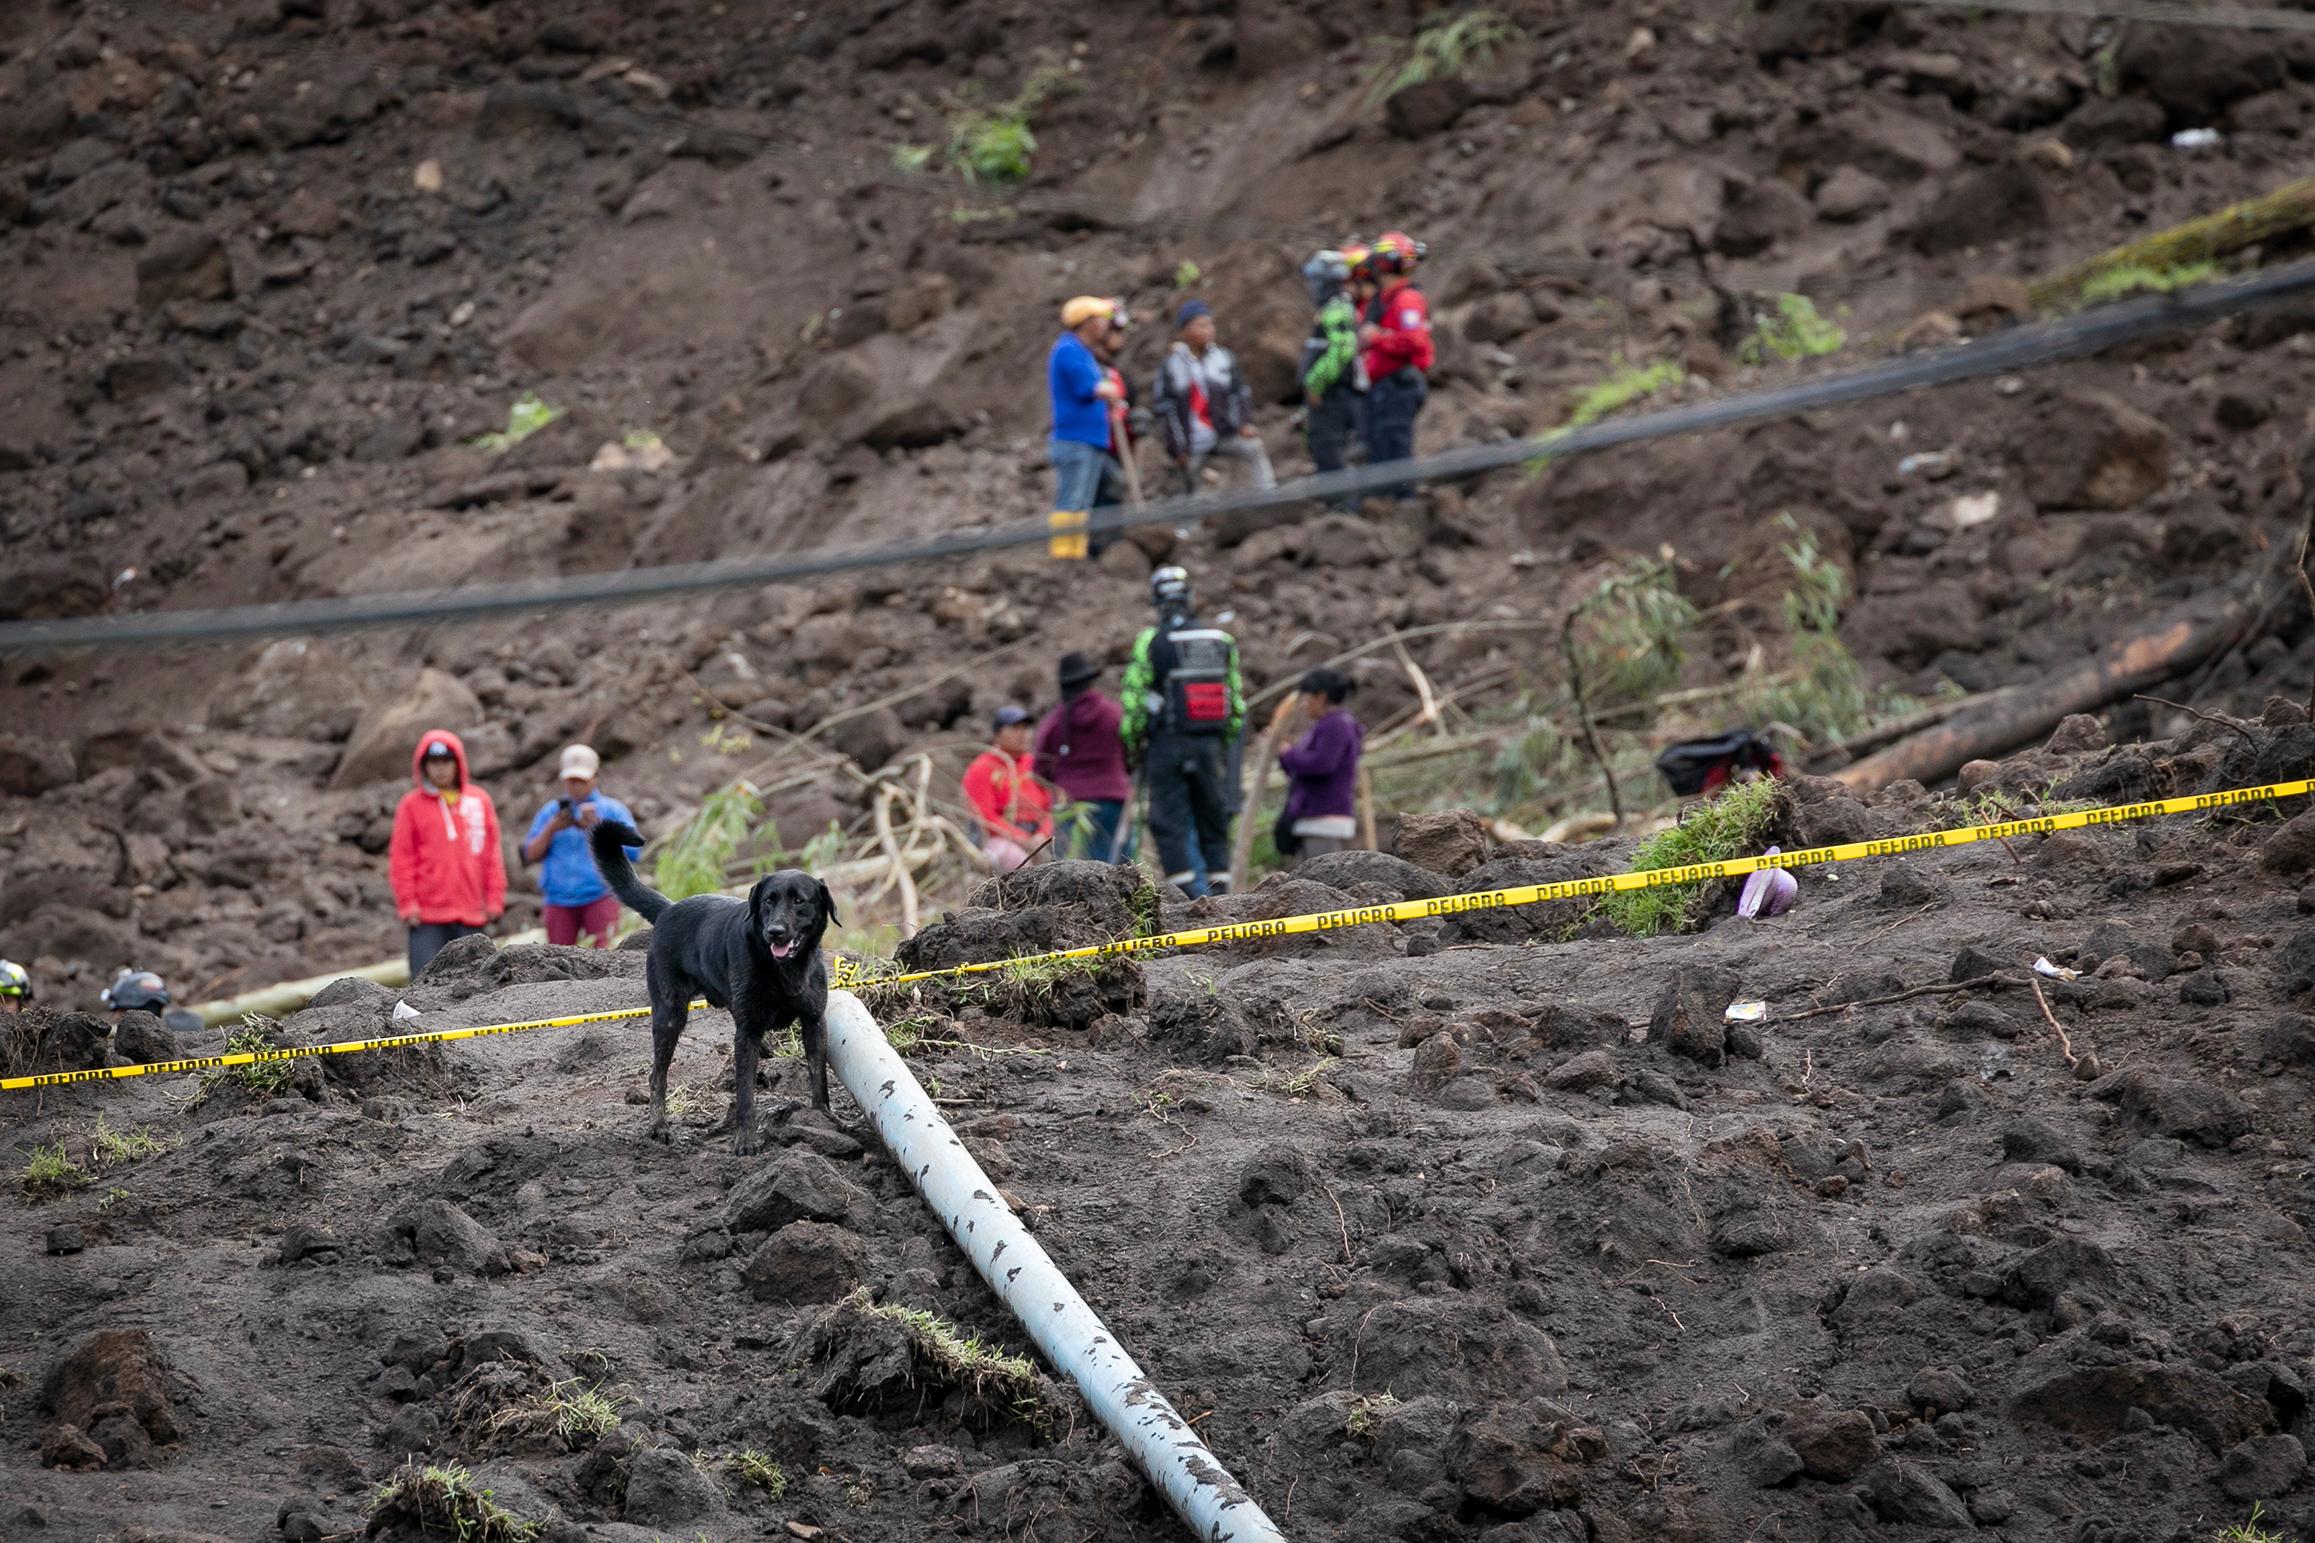 Landslide in Alausí, Chimborazo - For Reuters